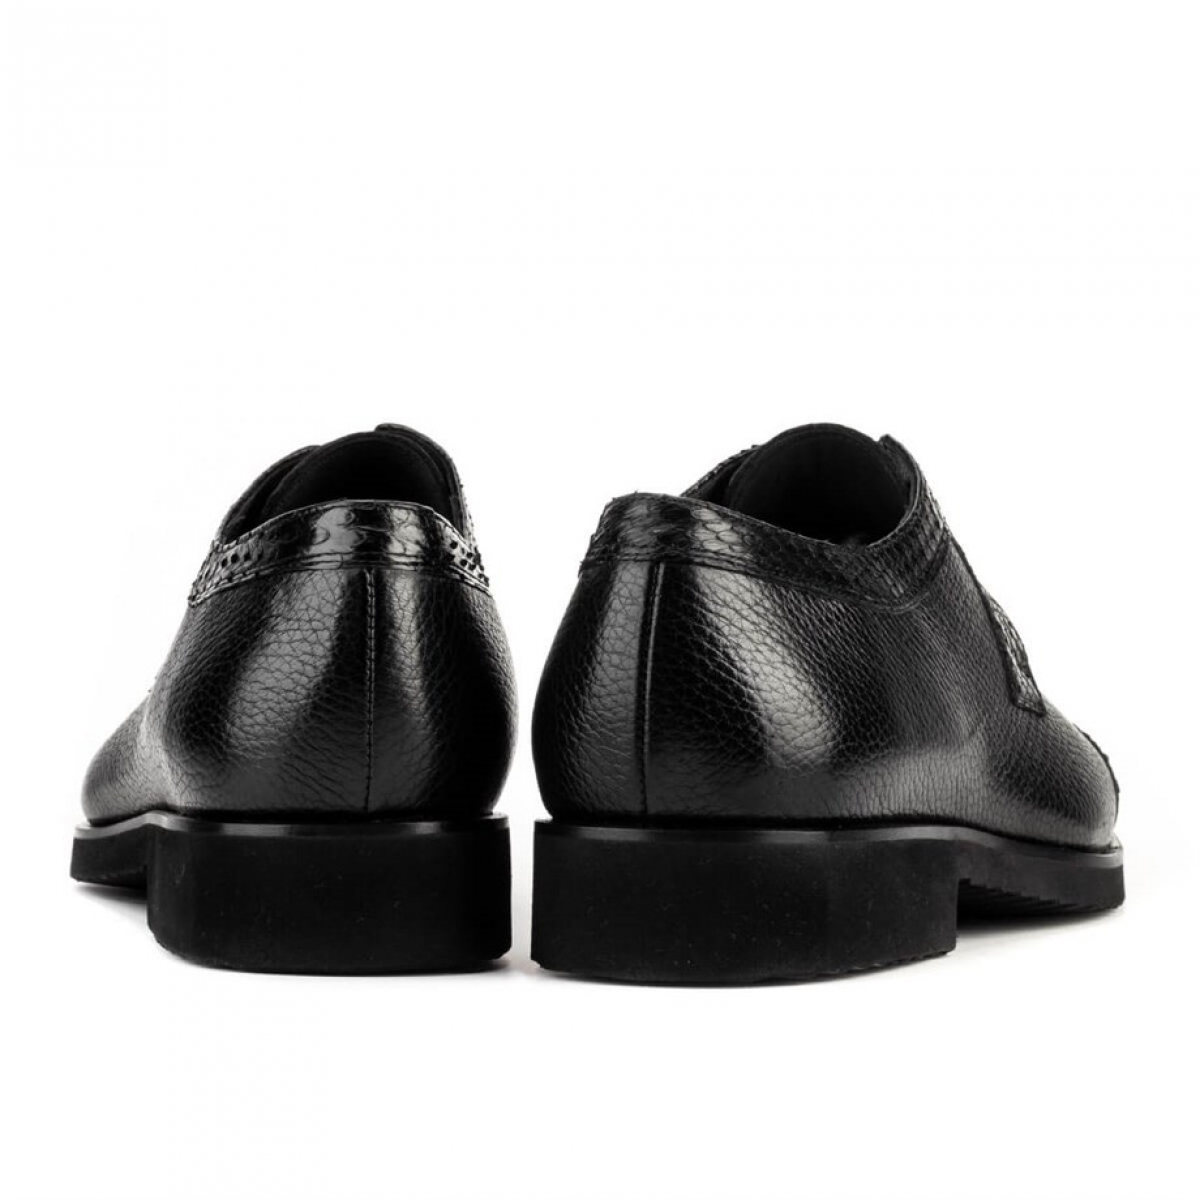 Flo Hakiki Deri Siyah Bağcıklı Erkek Klasik Ayakkabı. 4